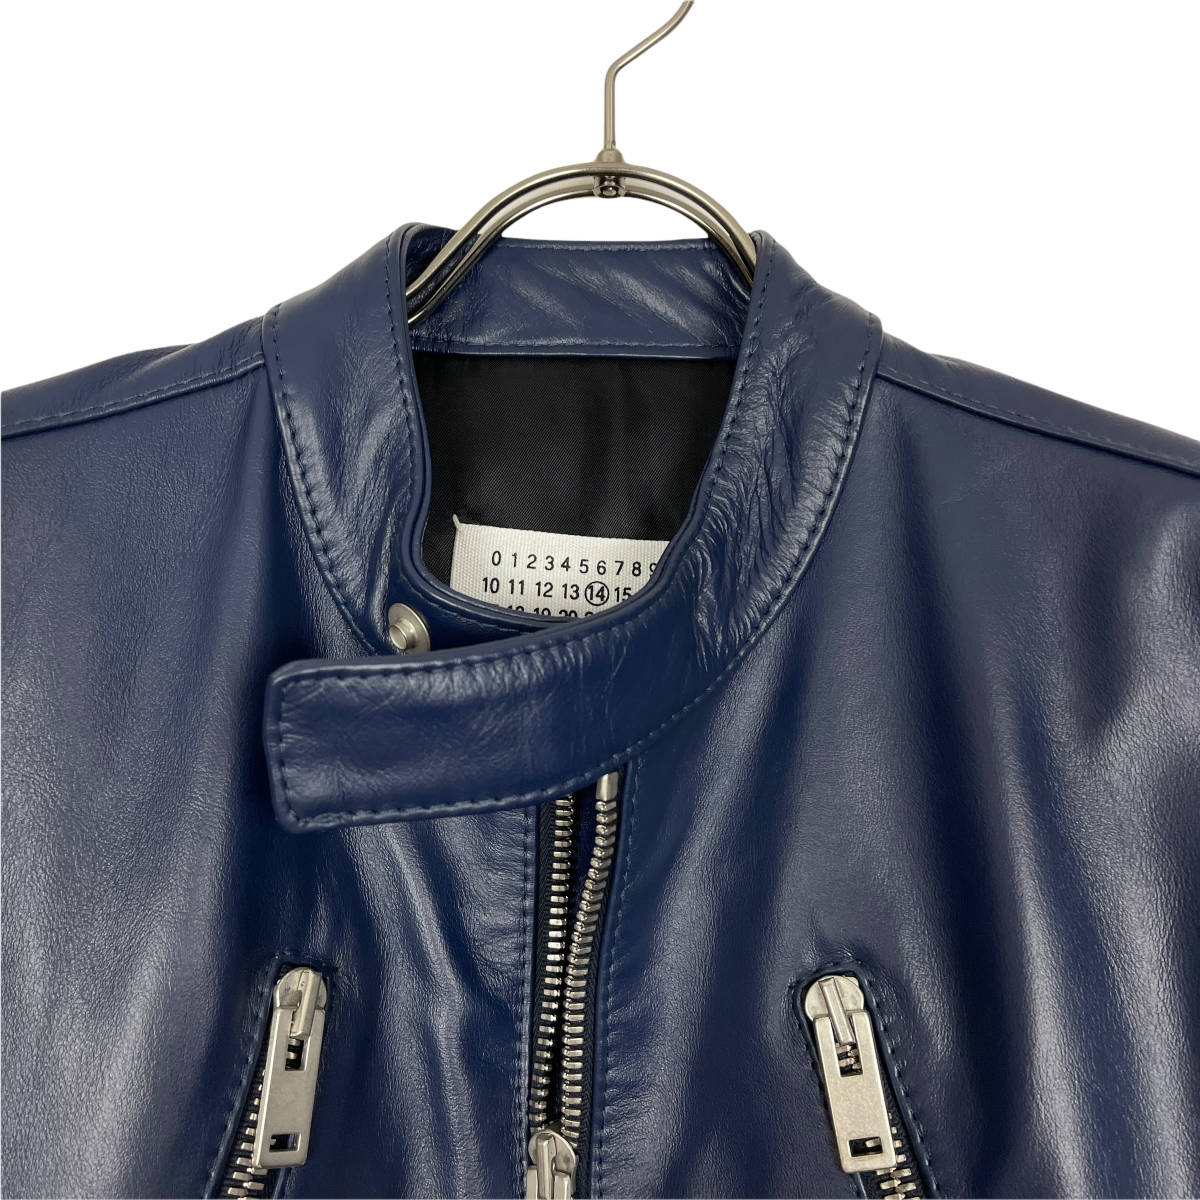 Maison Margiela(メゾン マルジェラ) 八の字 leather jacket 2016 (navy)